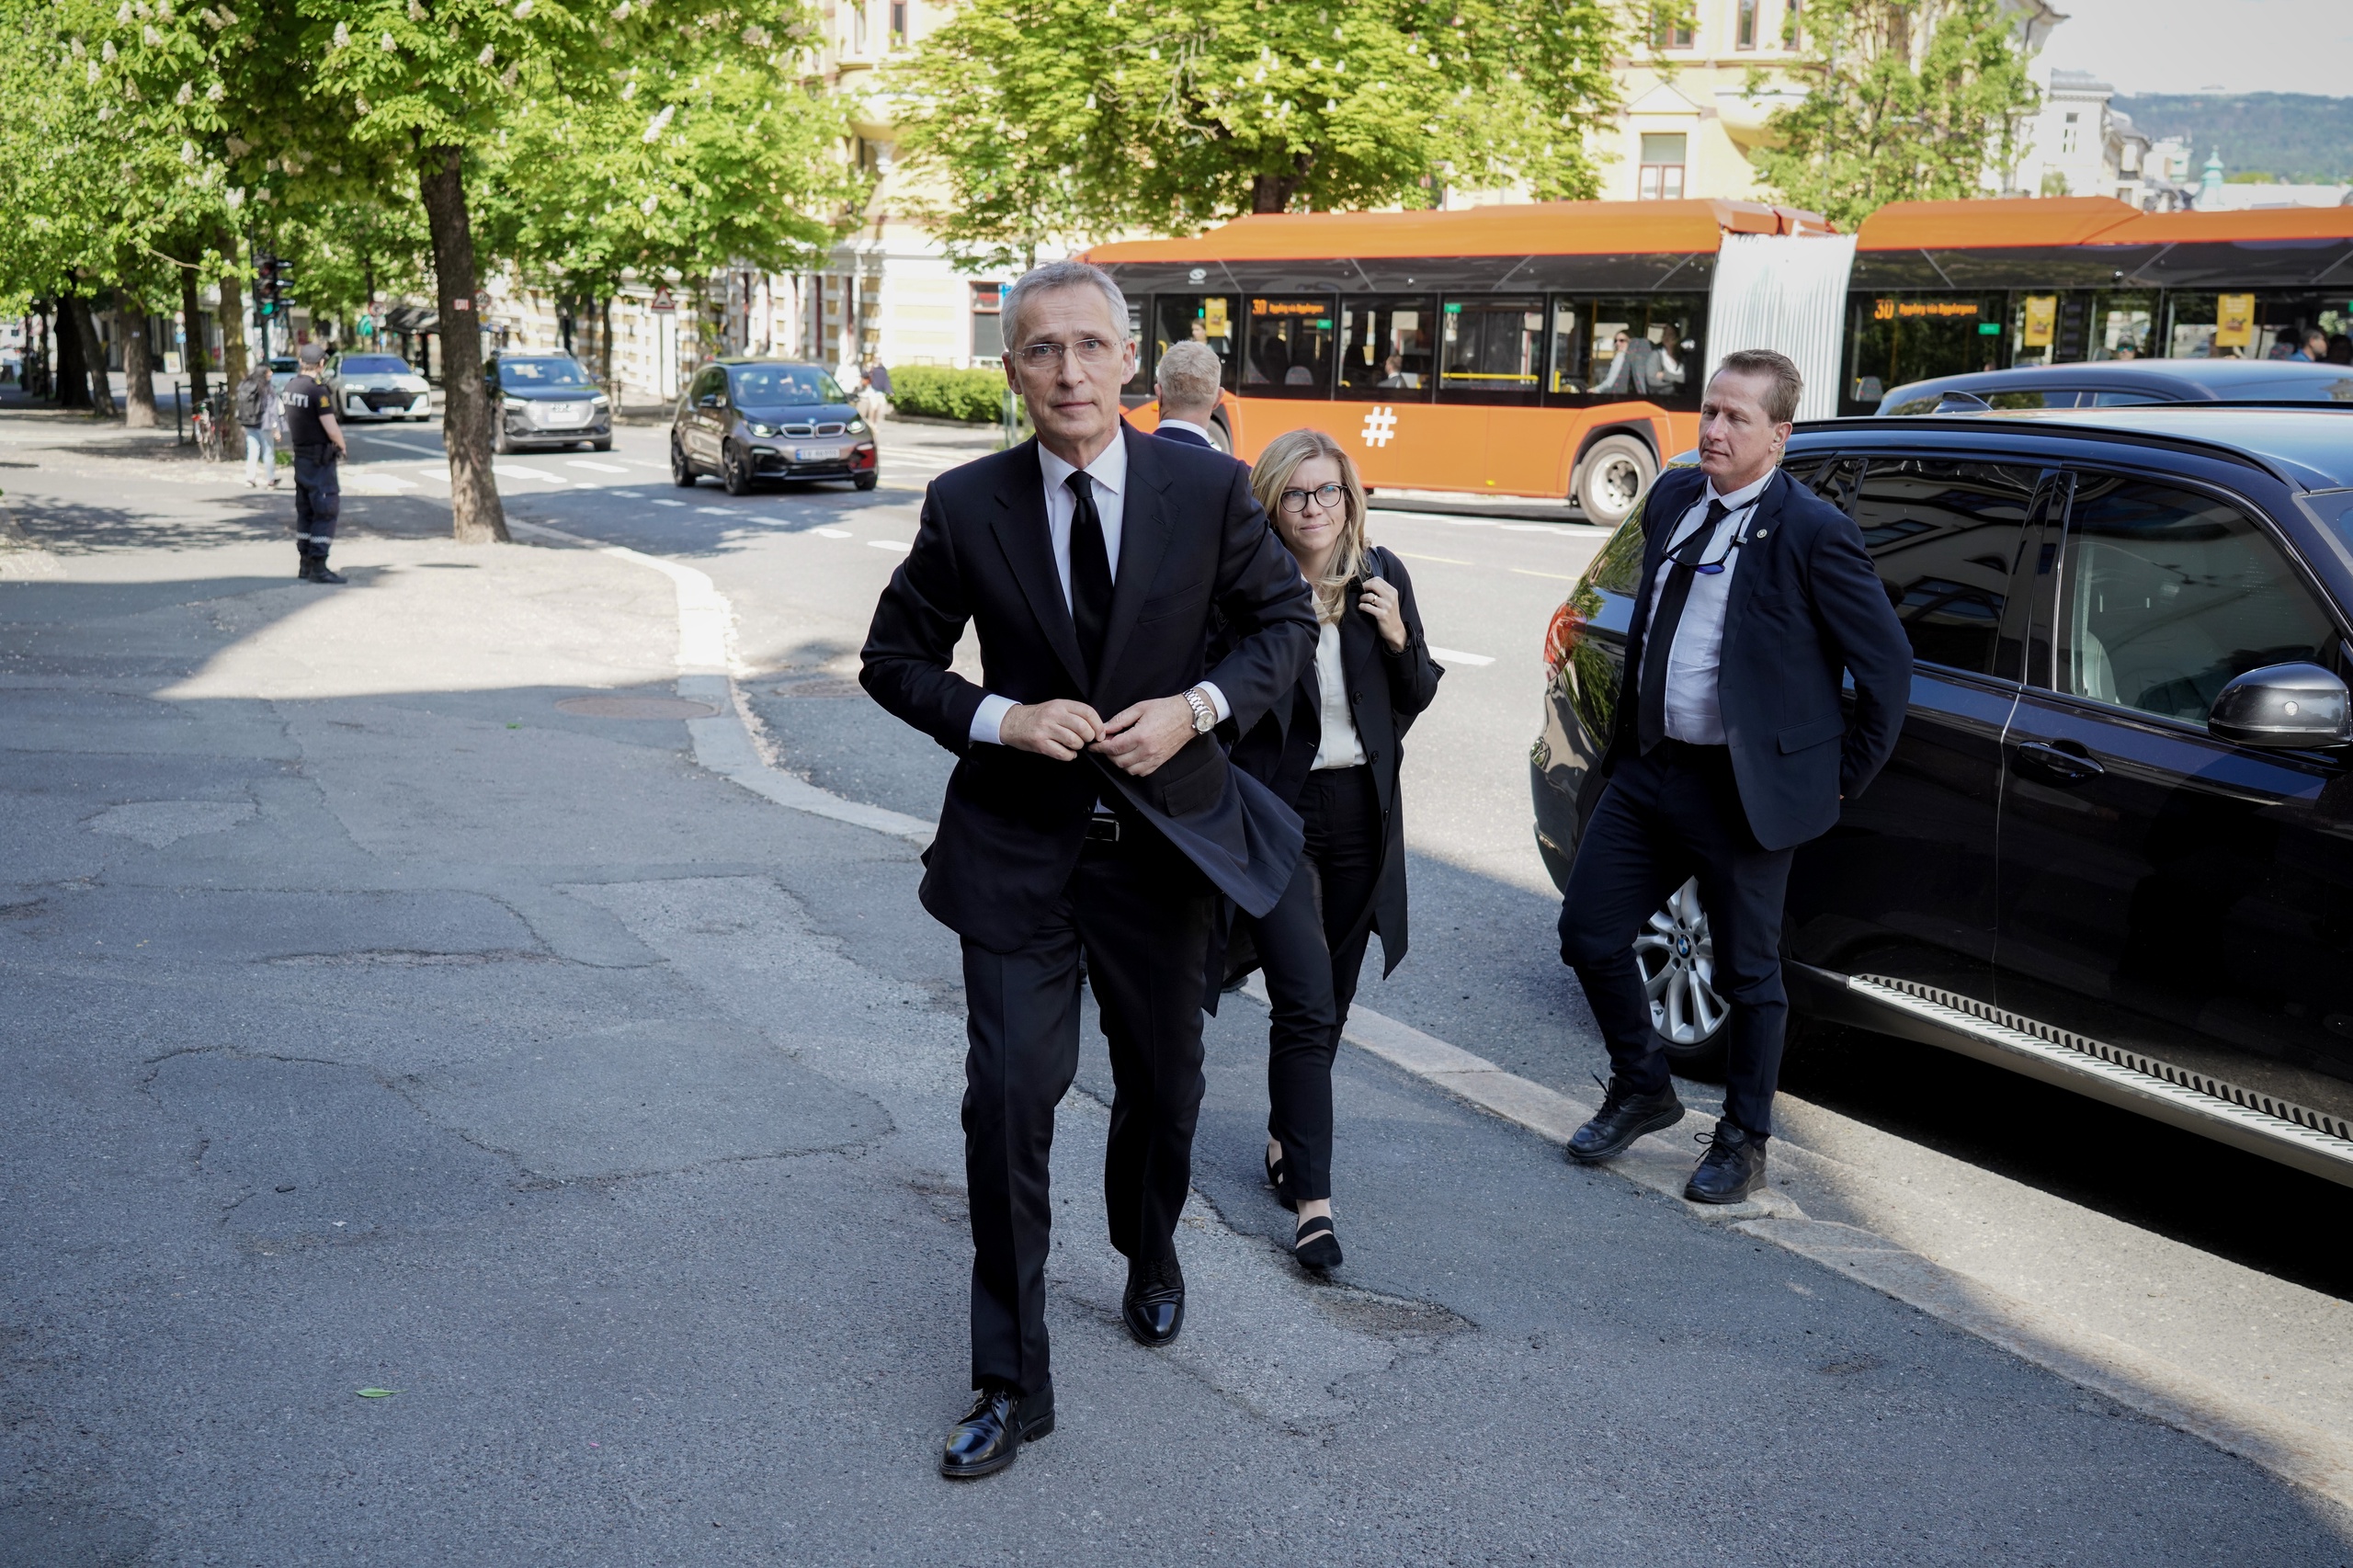 NAVO-baas Jens Stoltenberg heeft Kosovo vandaag opgeroepen om de spanning met Servië te doen afnemen, daags na de gewelddadige confrontaties tussen Kosovaarse politie en demonstranten. Dat meldt Reuters. Serviërs demonstreerden tegen Albanese burgemeesters die gekozen werden in etnisch-Servische gebieden.